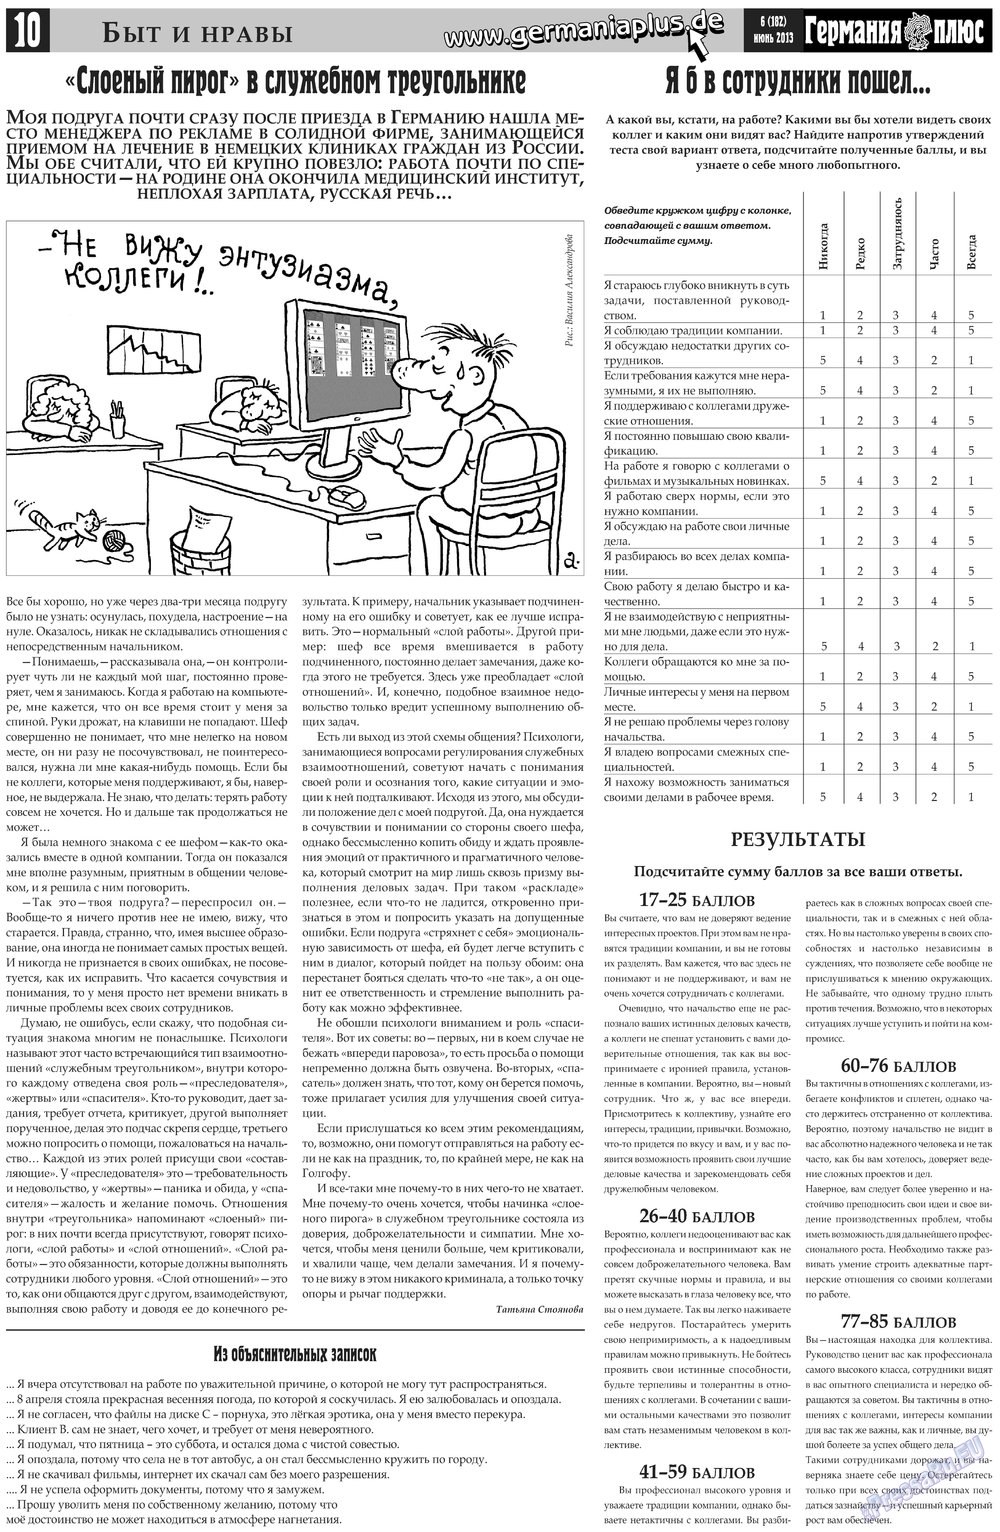 Германия плюс, газета. 2013 №6 стр.10